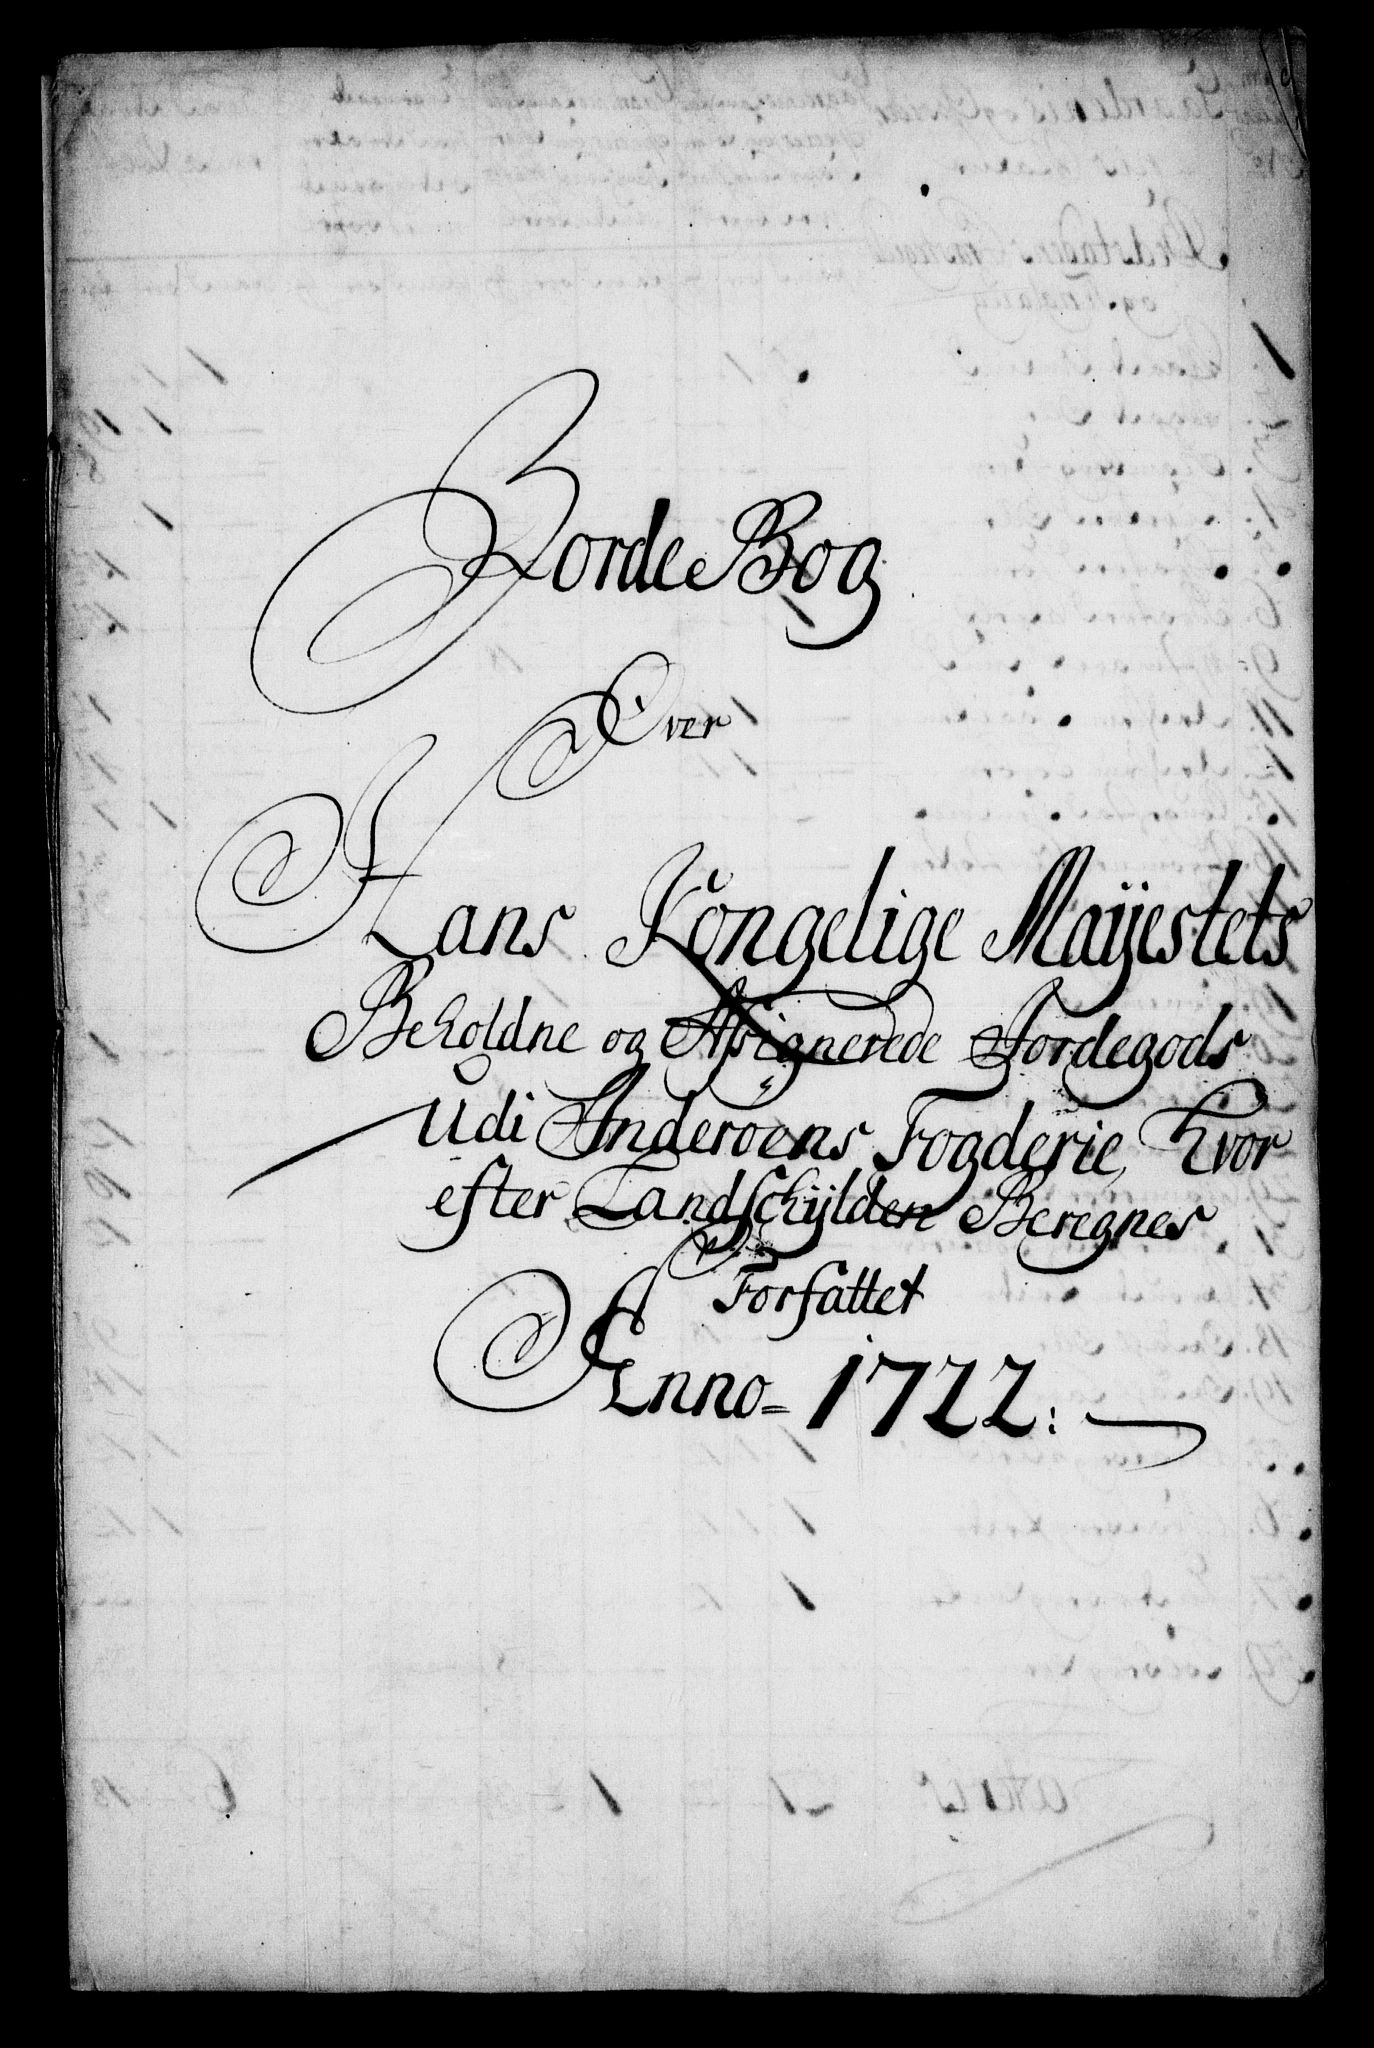 Rentekammeret inntil 1814, Realistisk ordnet avdeling, RA/EA-4070/N/Na/L0006/0005: [XI k]: Assignert krongods nordafjells (1720, 1722, 1727 og 1728): / Inderøy fogderi, 1722